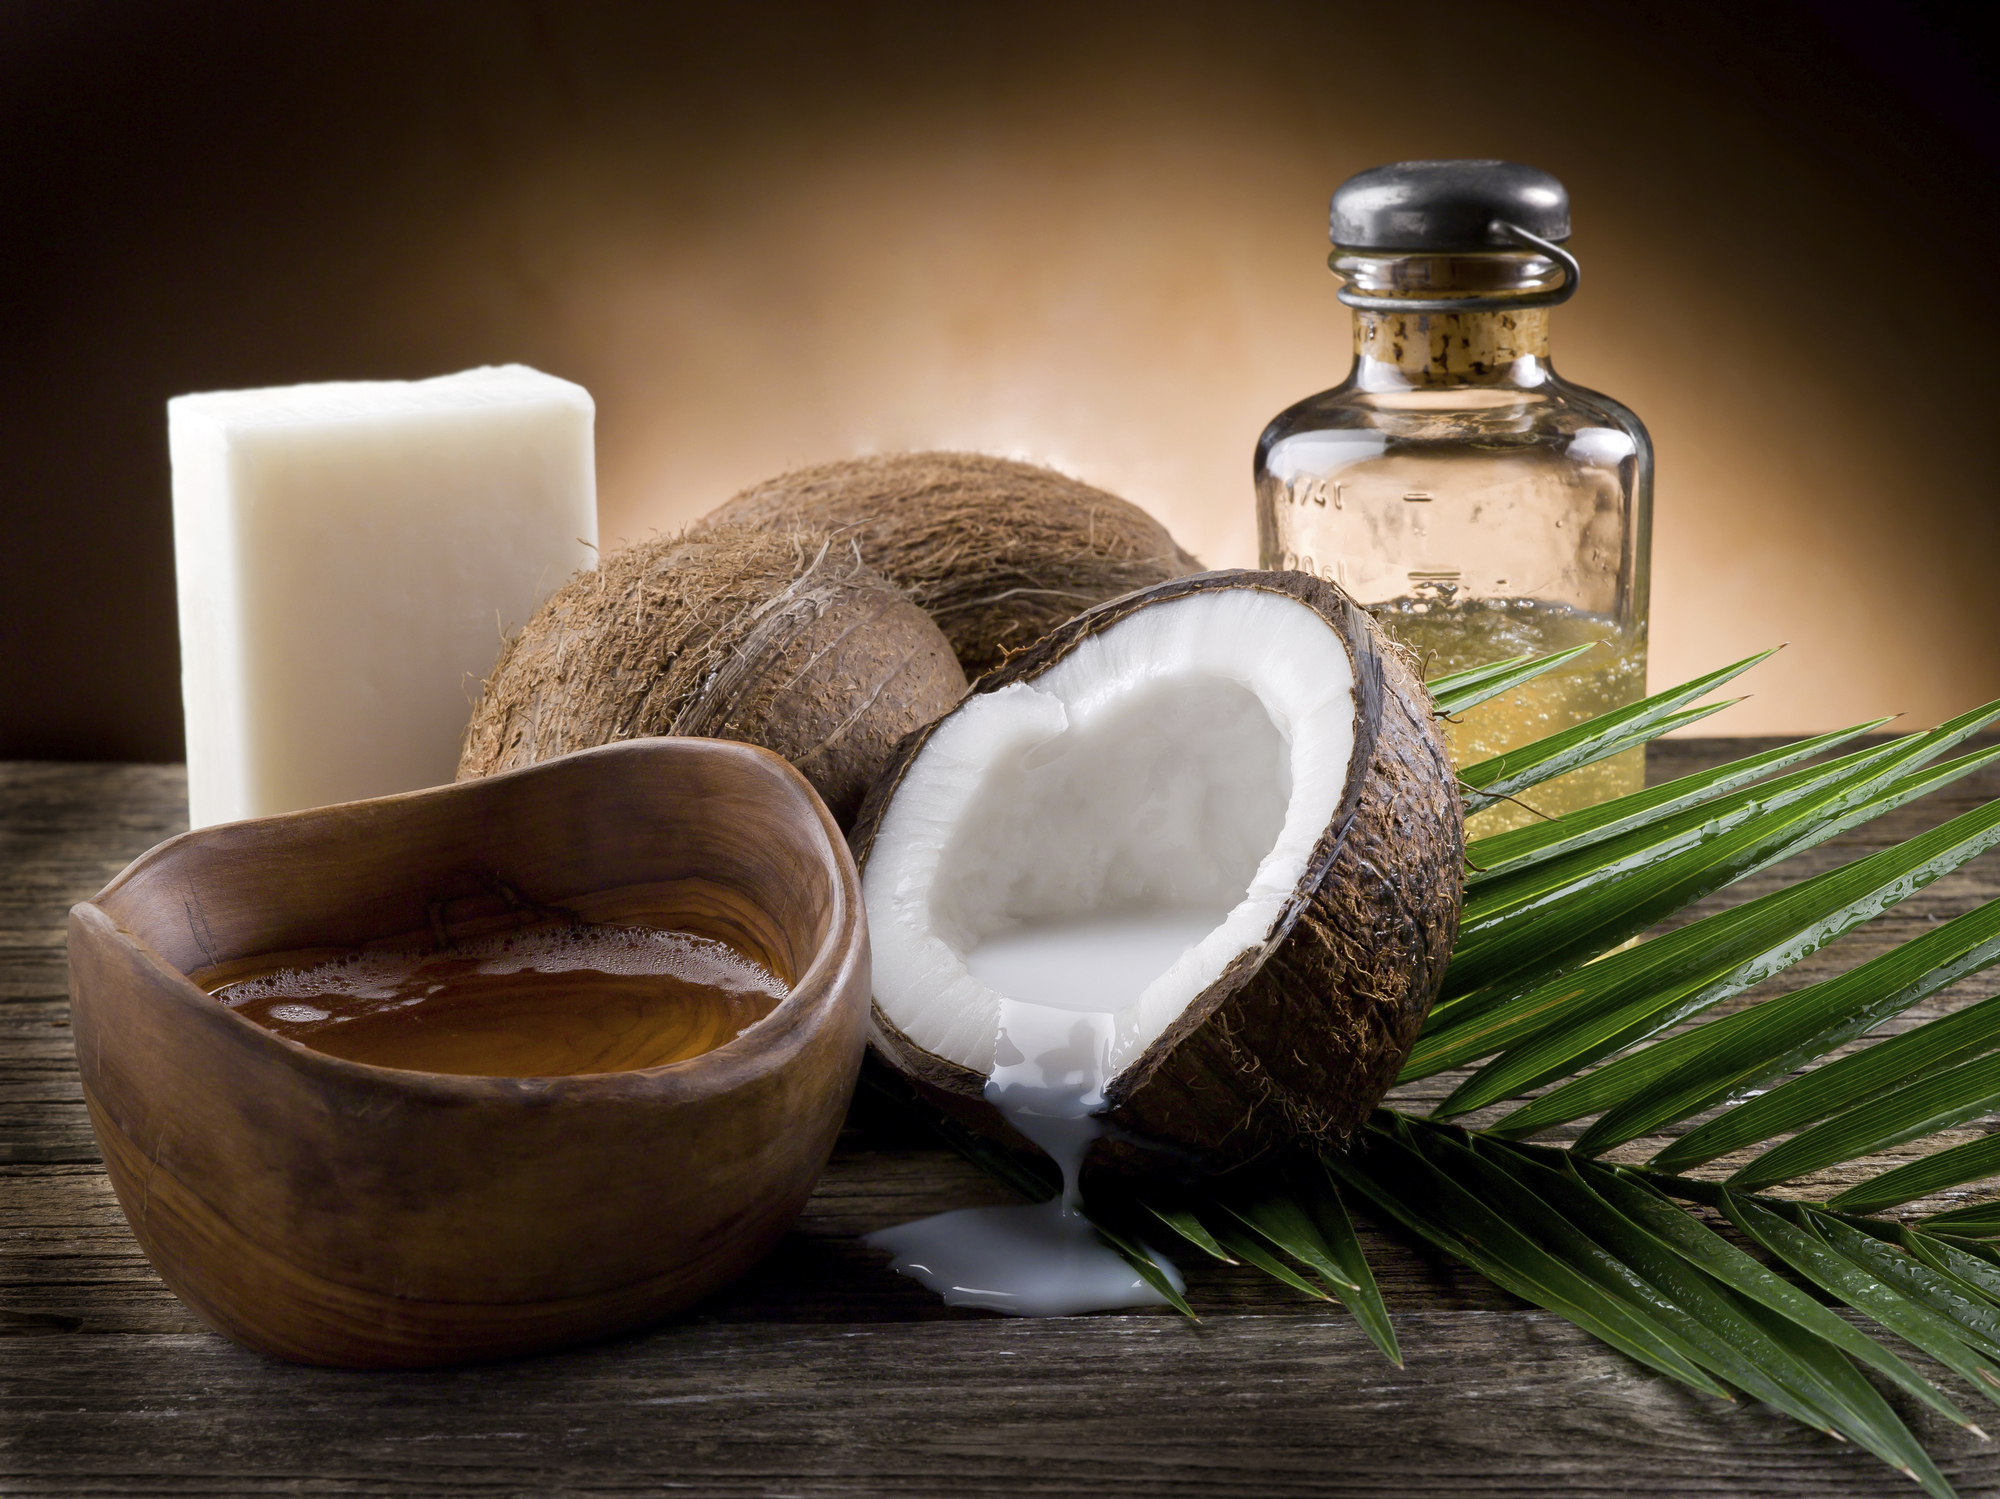 Кокосовото масло подхранва и задравява кожата, овлажнява я и й помага да се възстанови. Избирайте студено пресовано масло, защото в него са запазенив най-високата степен всички полезни вещества. Можете да го използвате както като козметично средство, така и в кухнята.